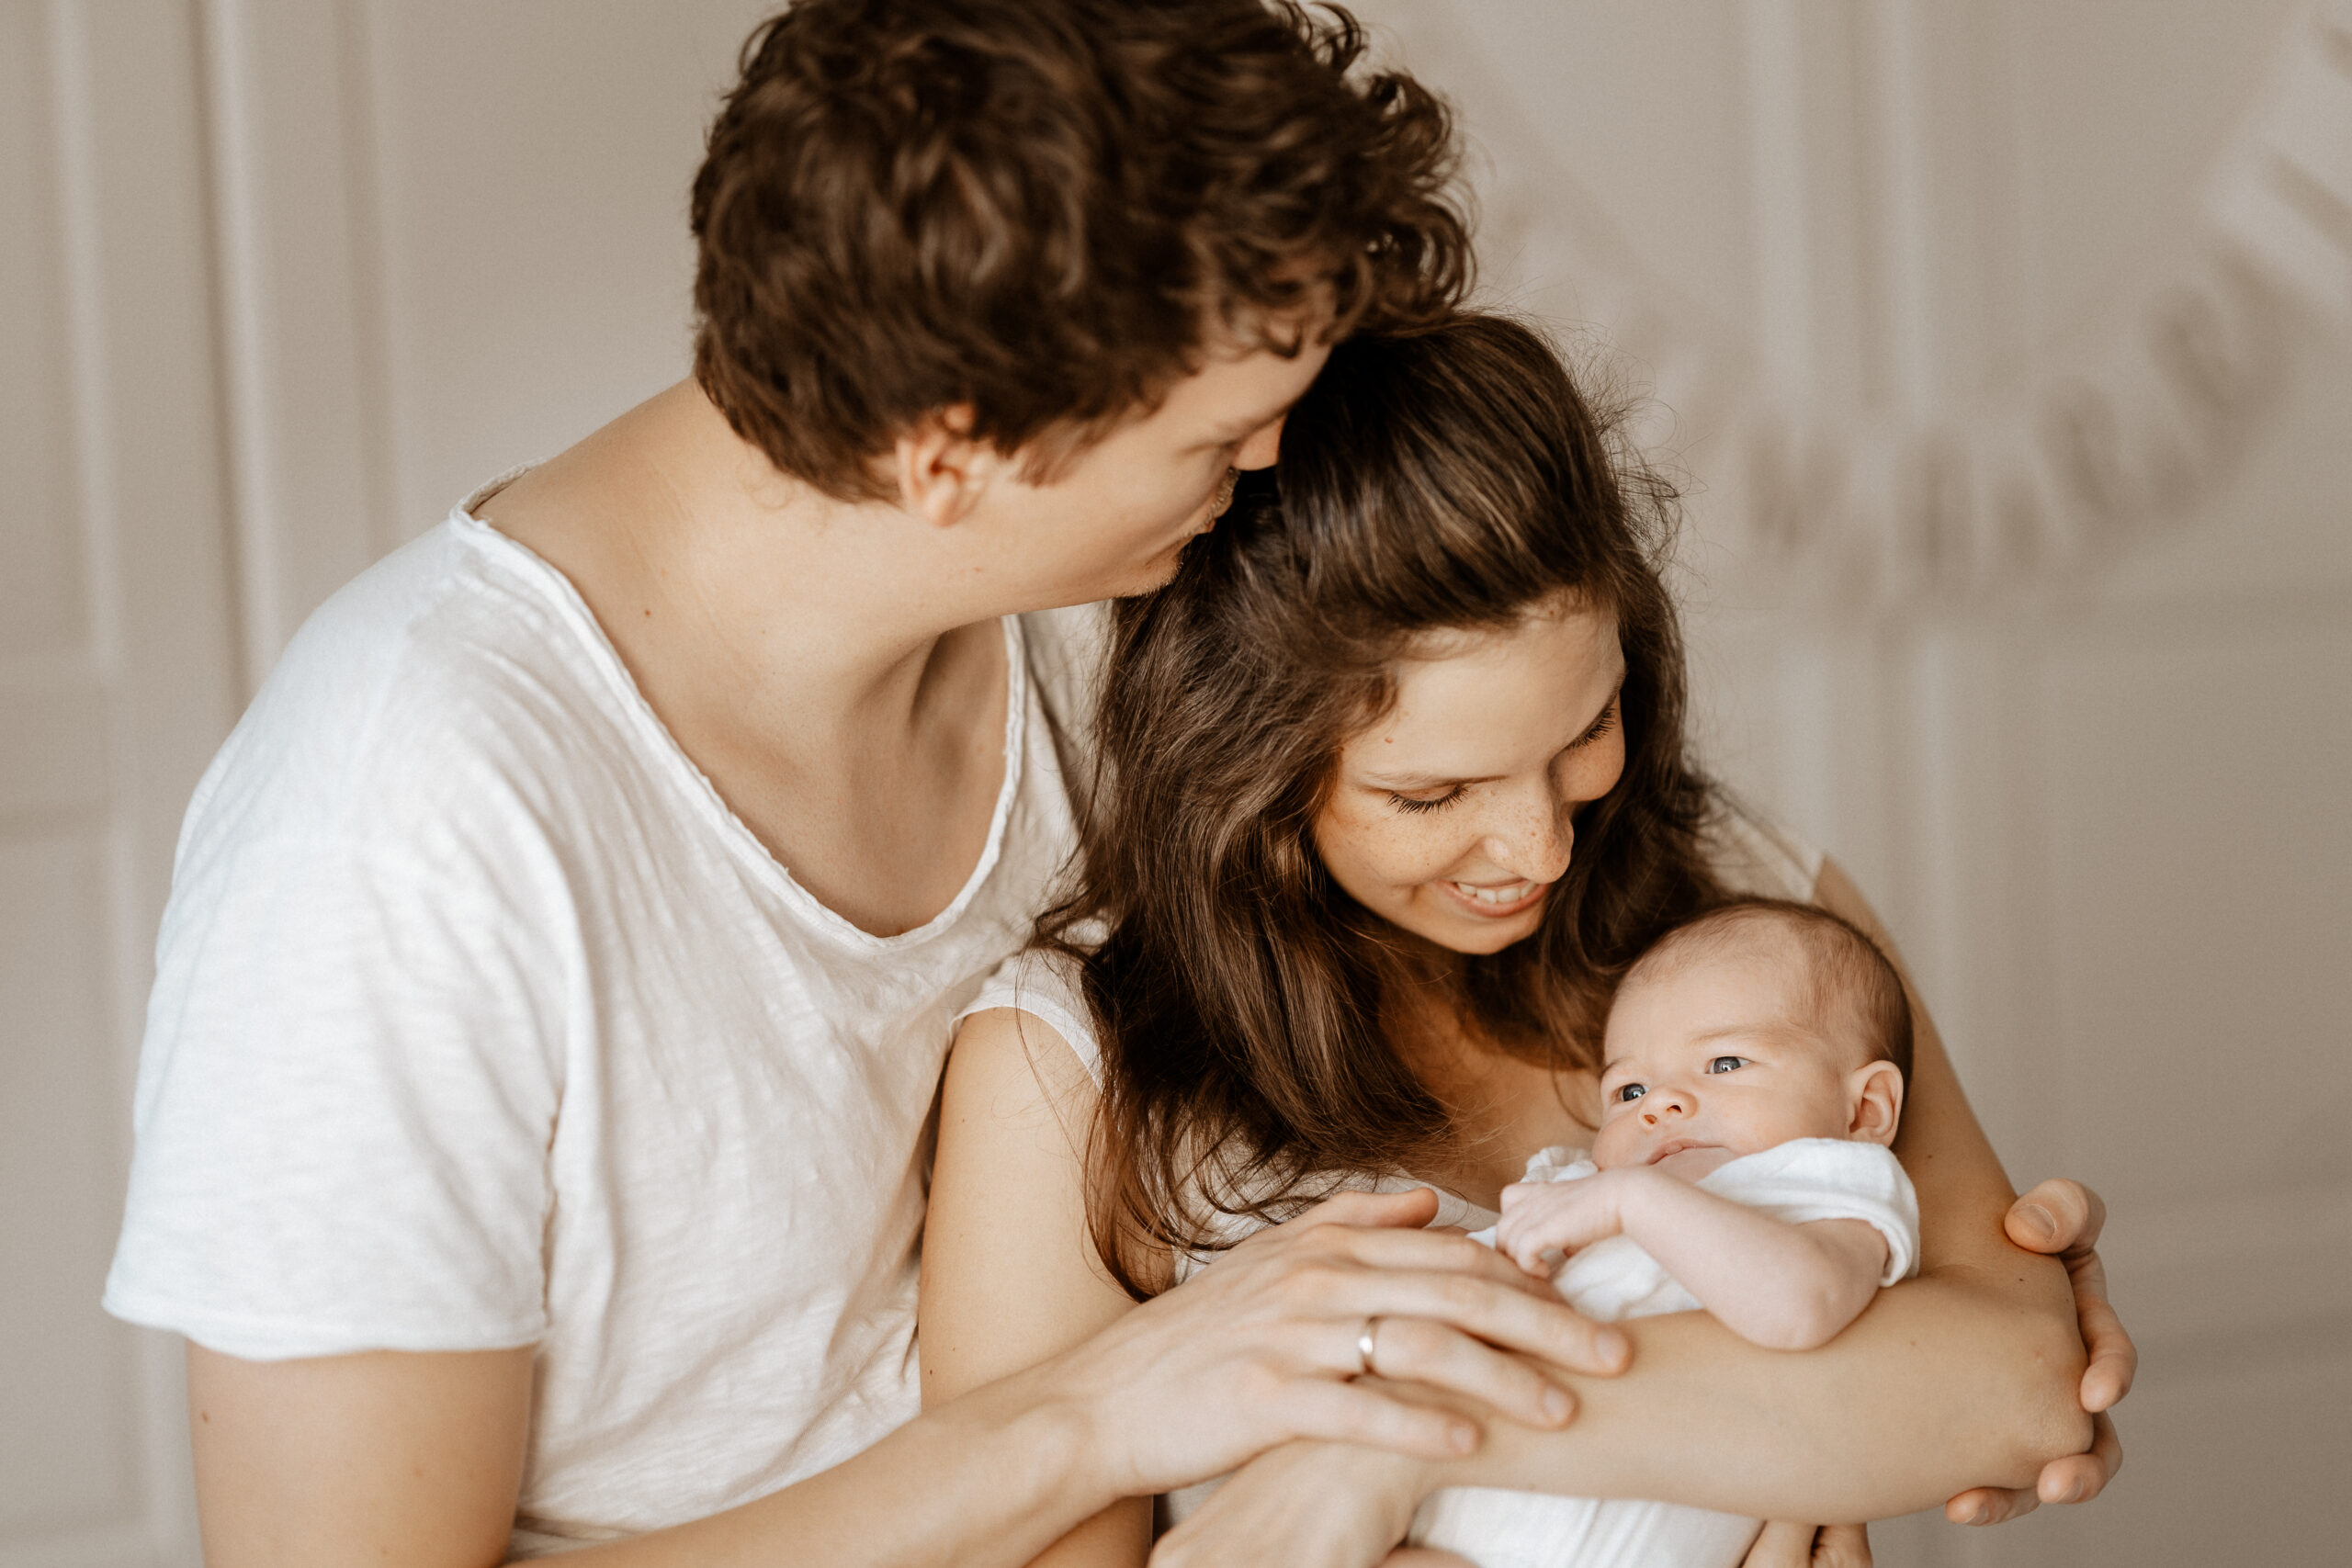 Hübsche, junge Familie mit Neugeborenen auf dem Arm.